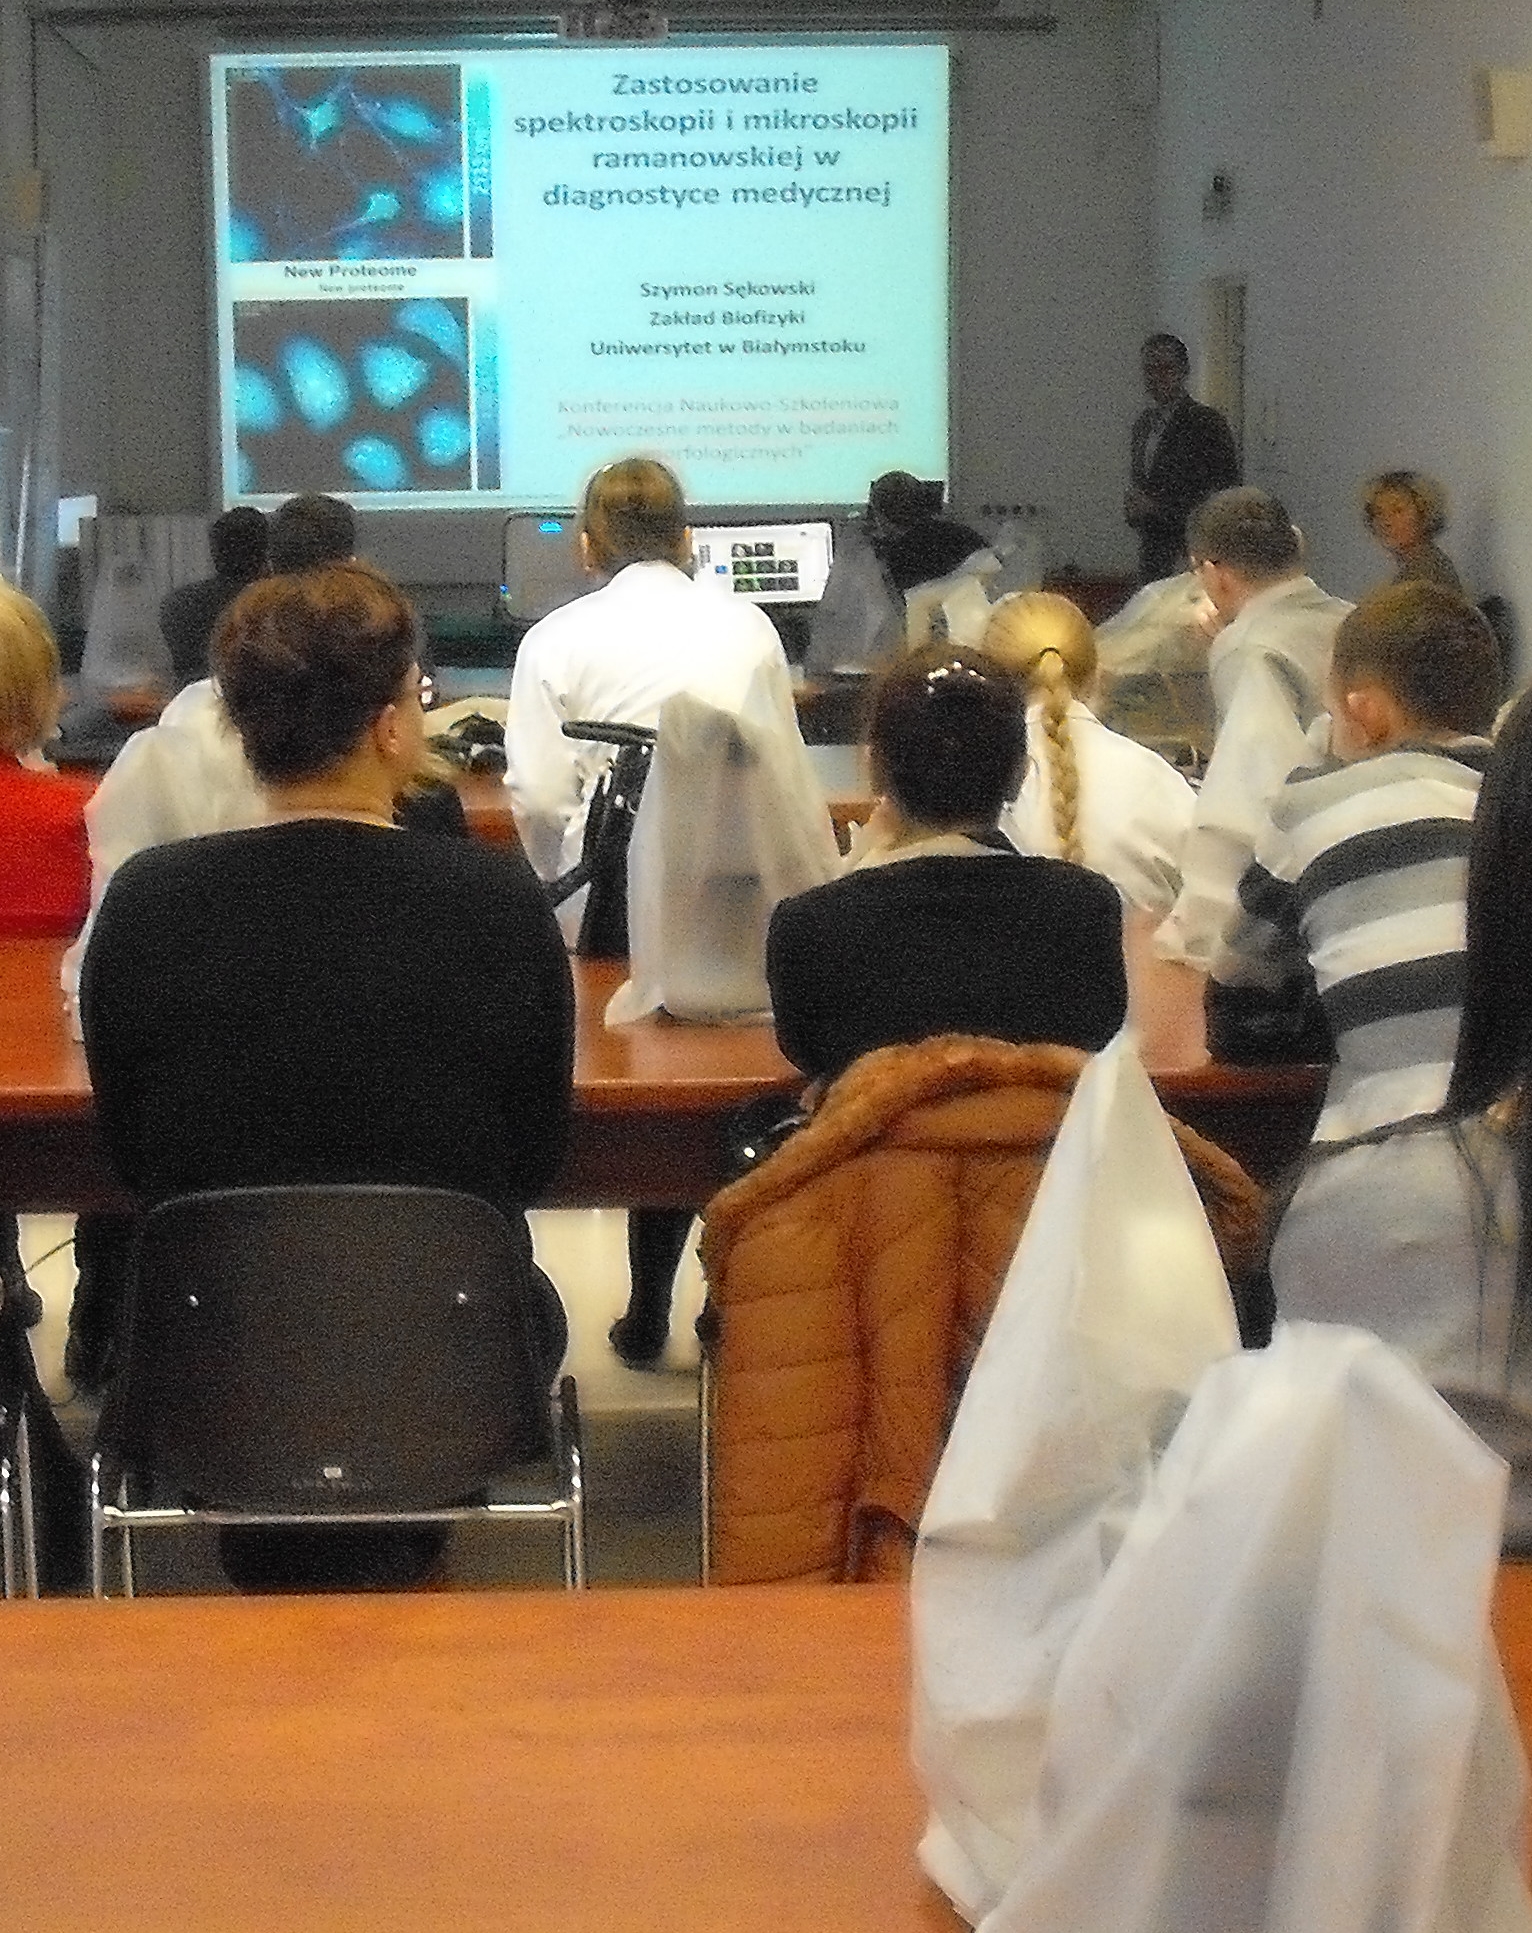 Uczestnicy konferencji słuchają wykładu dr Szymona Sękowskiego